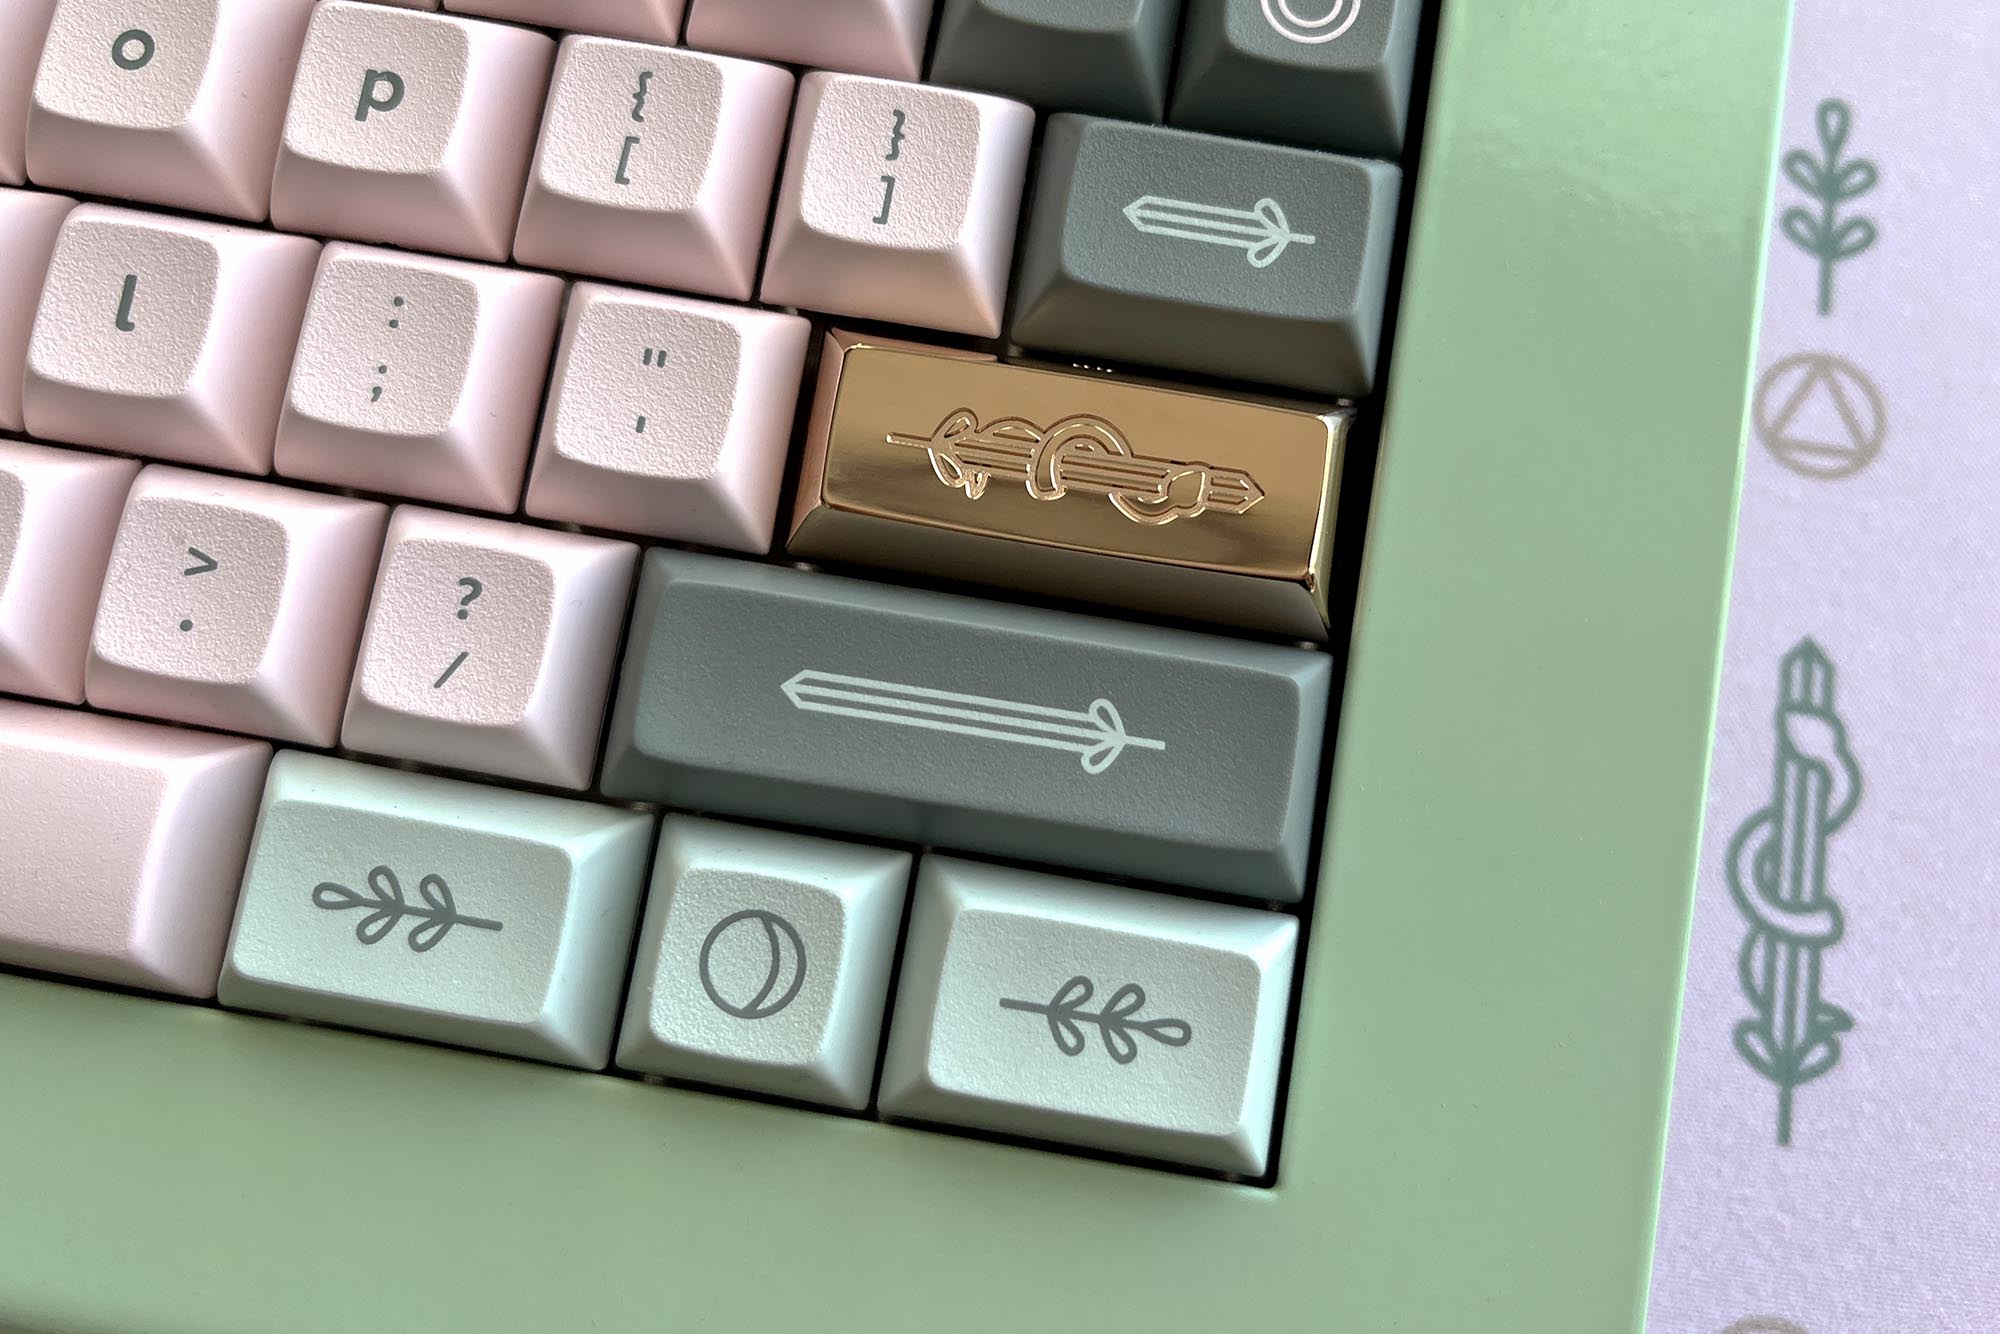 2 Jellykey artisan keycapキーキャップ 自作キーボード - PC/タブレット